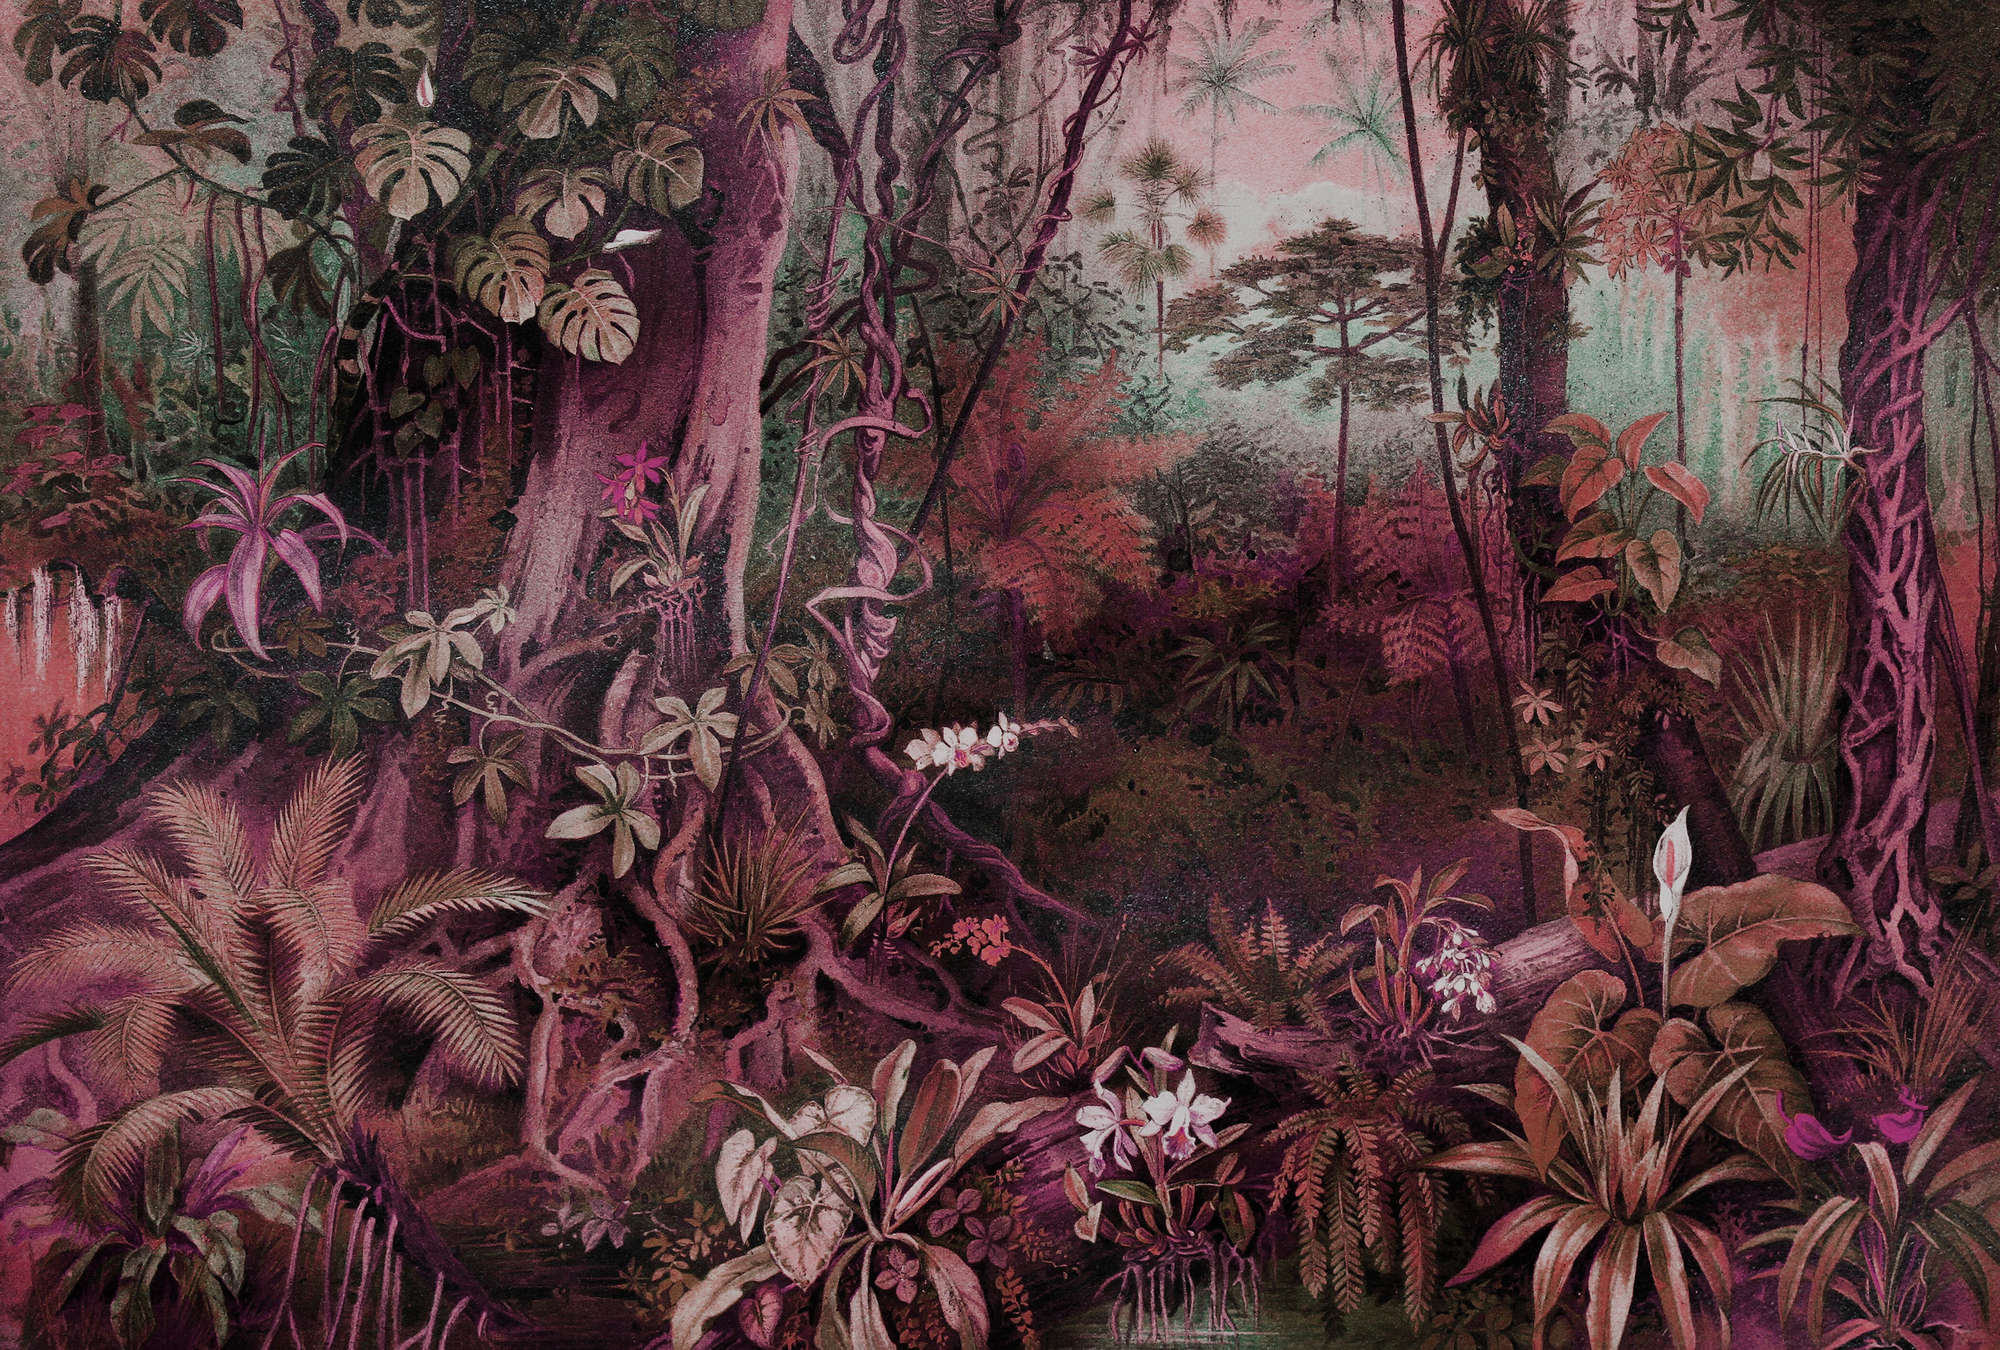             Papier peint jungle style dessin - Violet, Vert
        